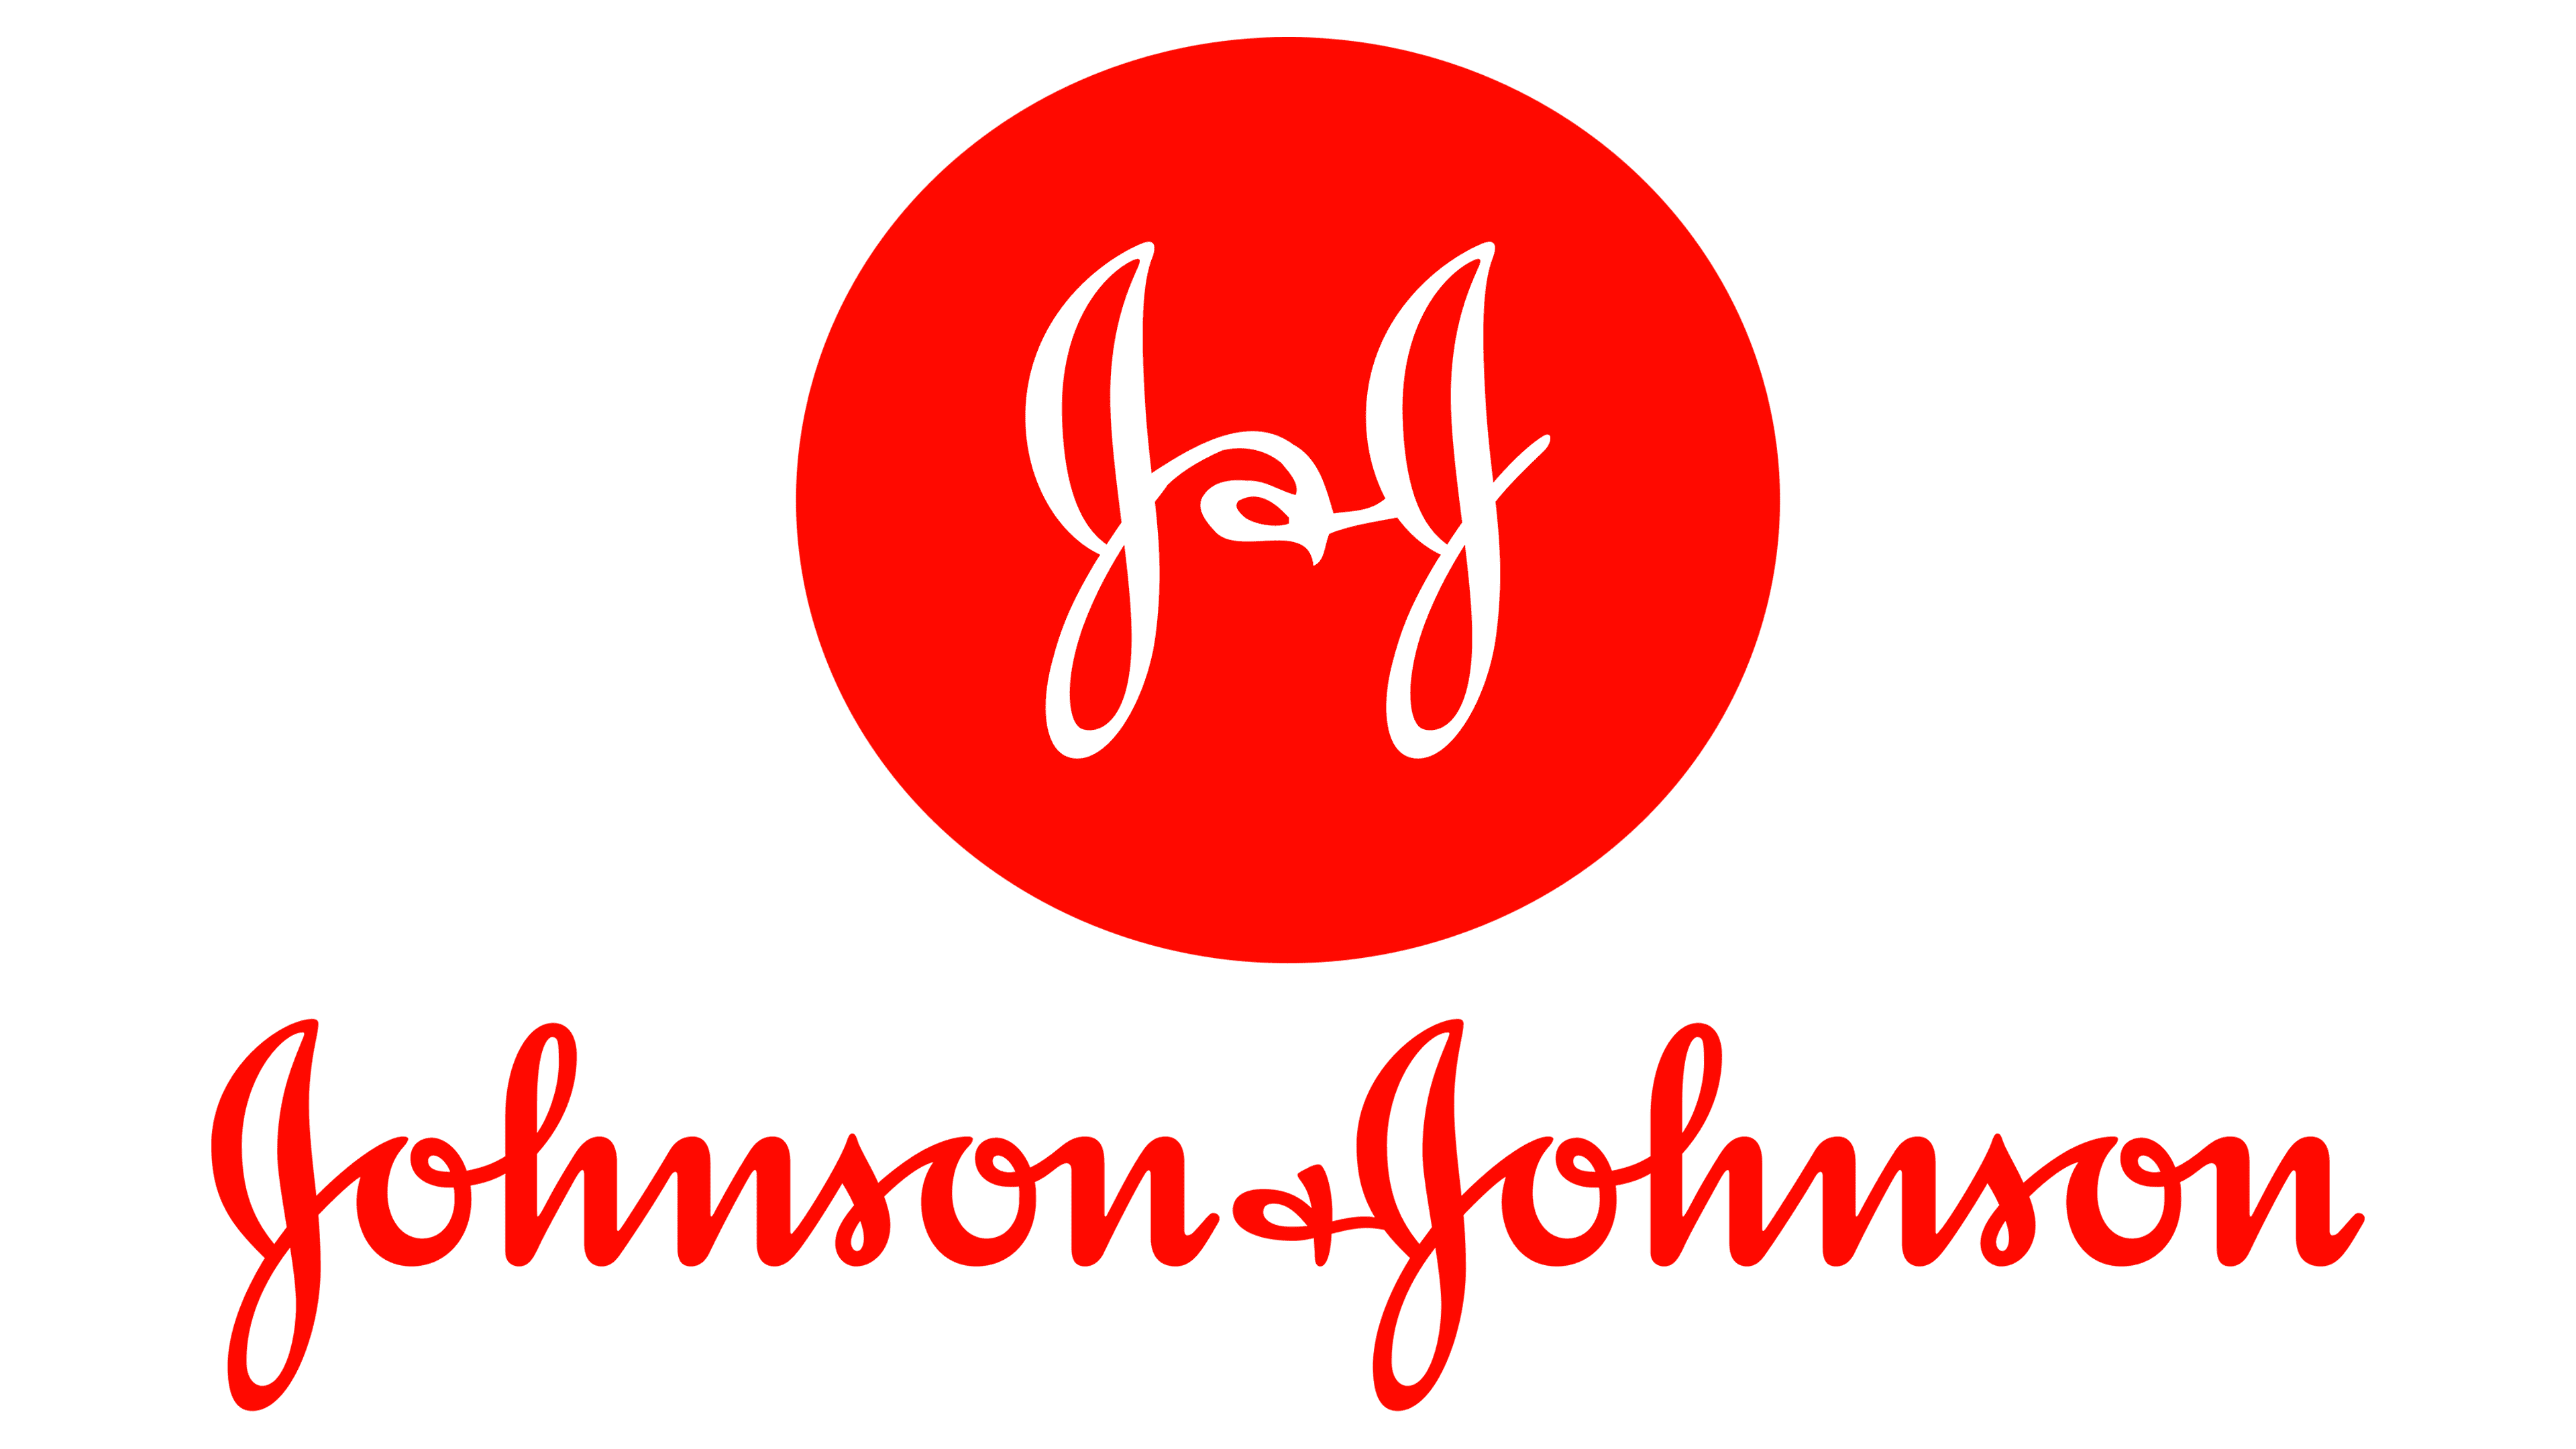 johnson-johnson-logo-histoire-signification-de-l-embl-me